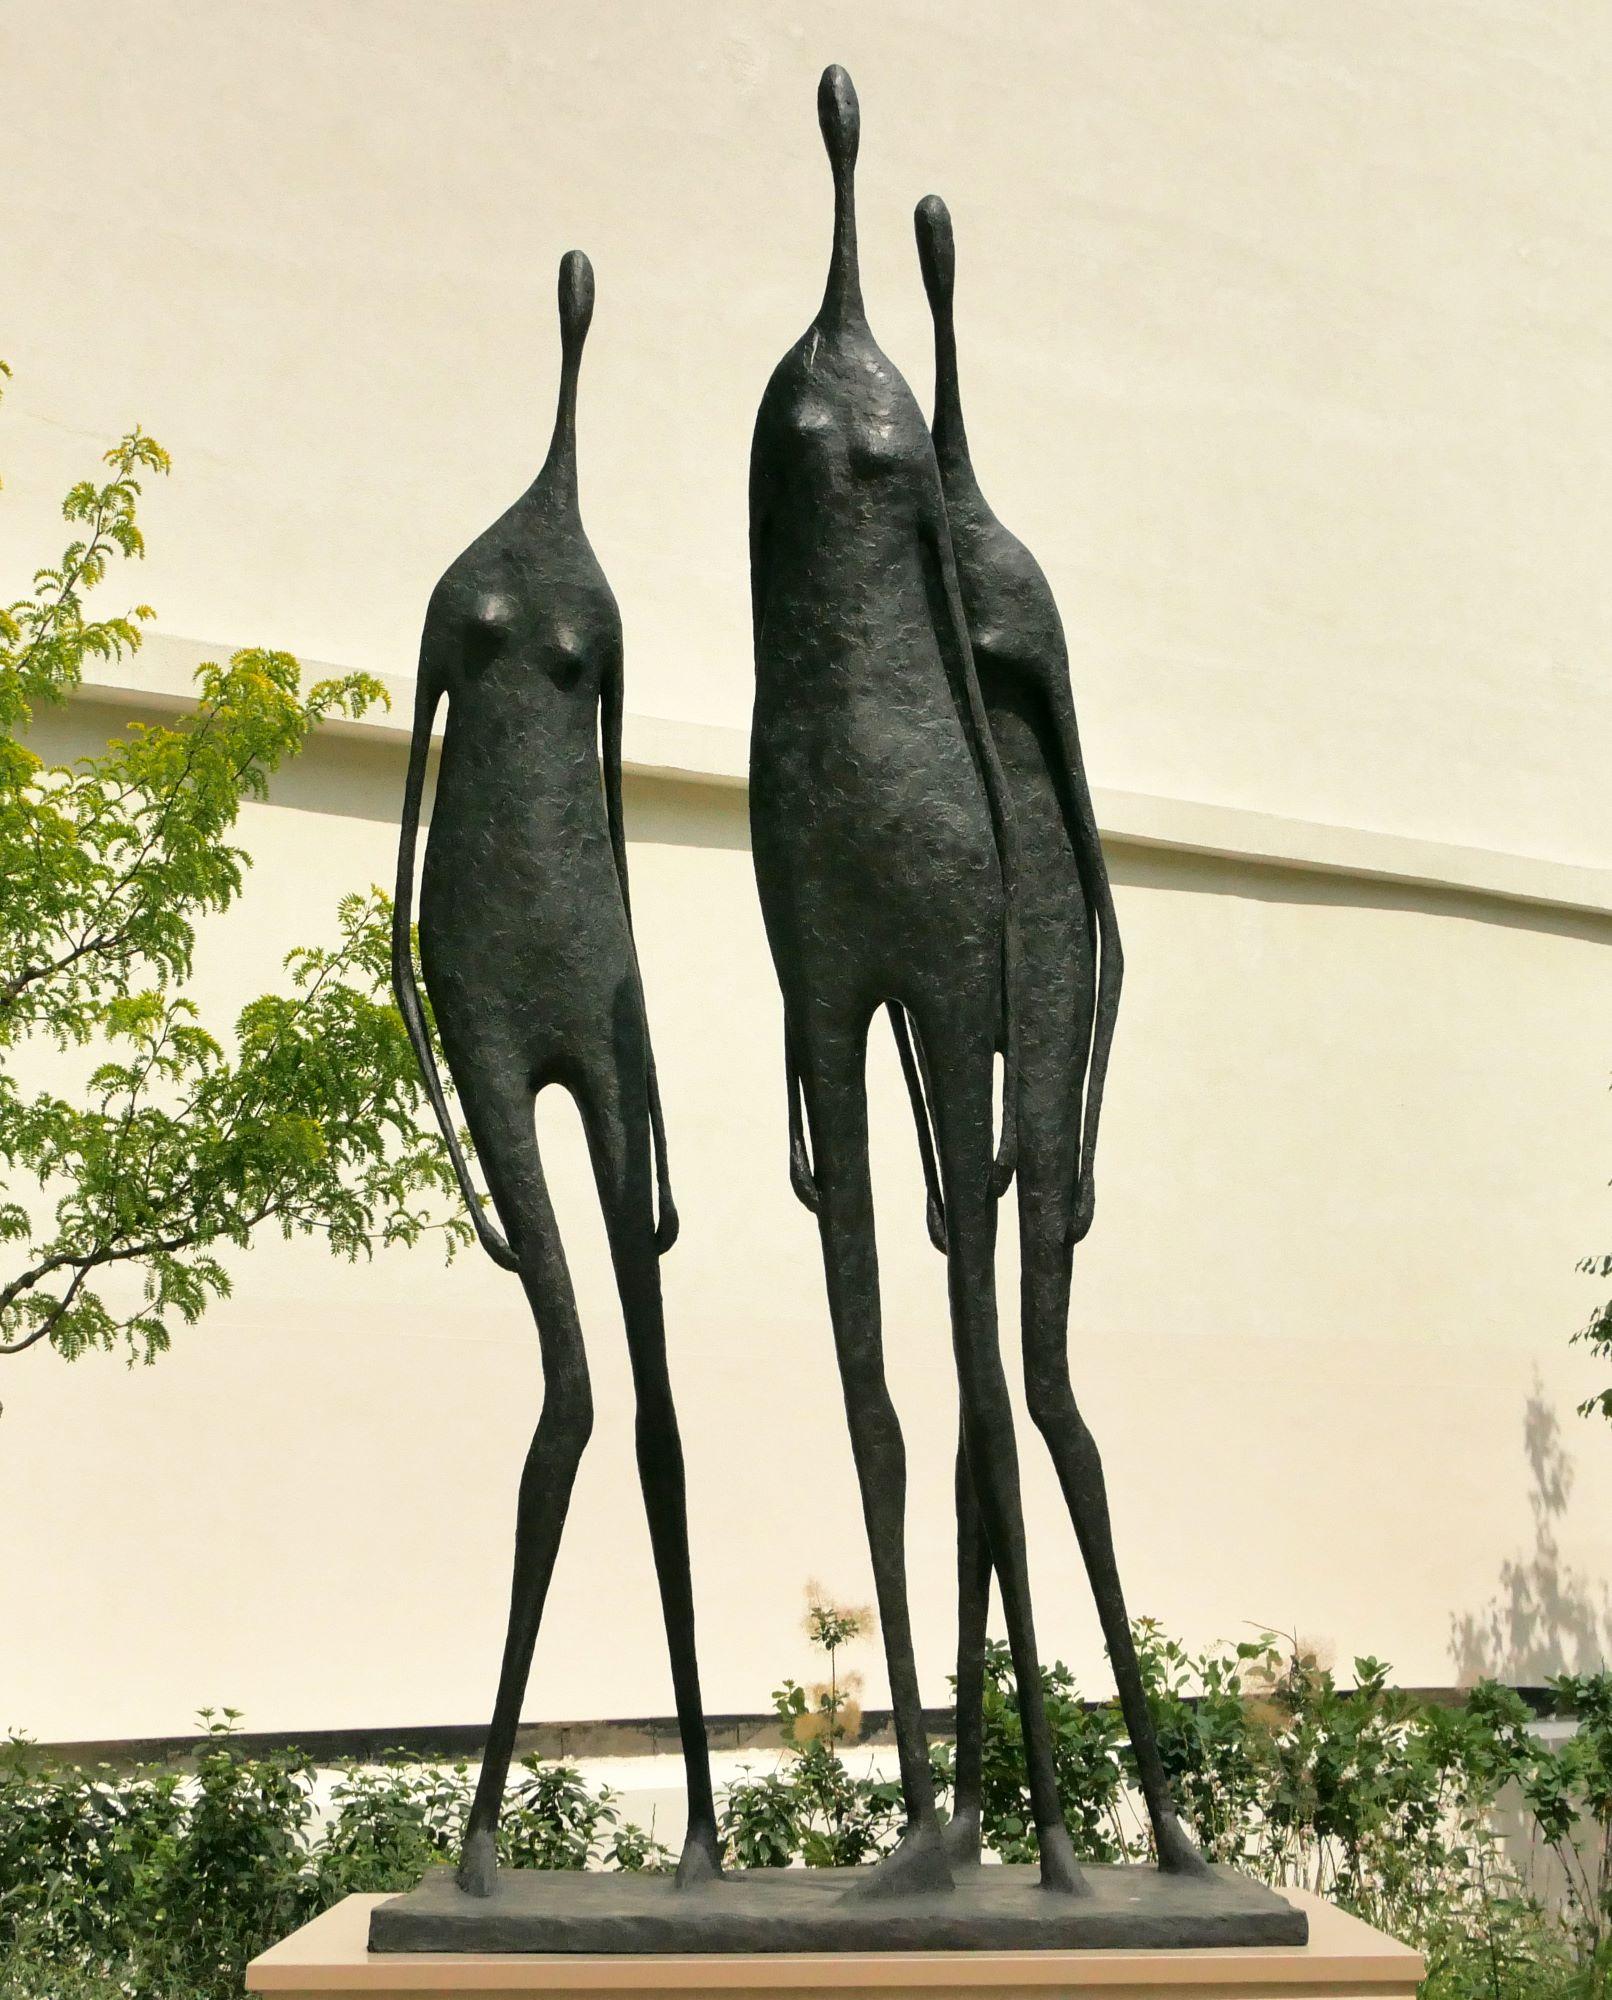 3 Monumental Standing Figures ist eine Bronzeskulptur des französischen zeitgenössischen Künstlers Pierre Yermia mit den Maßen 320 × 150 × 130 cm (126 × 59,1 × 51,2 in).  
Die Skulptur ist signiert und nummeriert, gehört zu einer limitierten Auflage